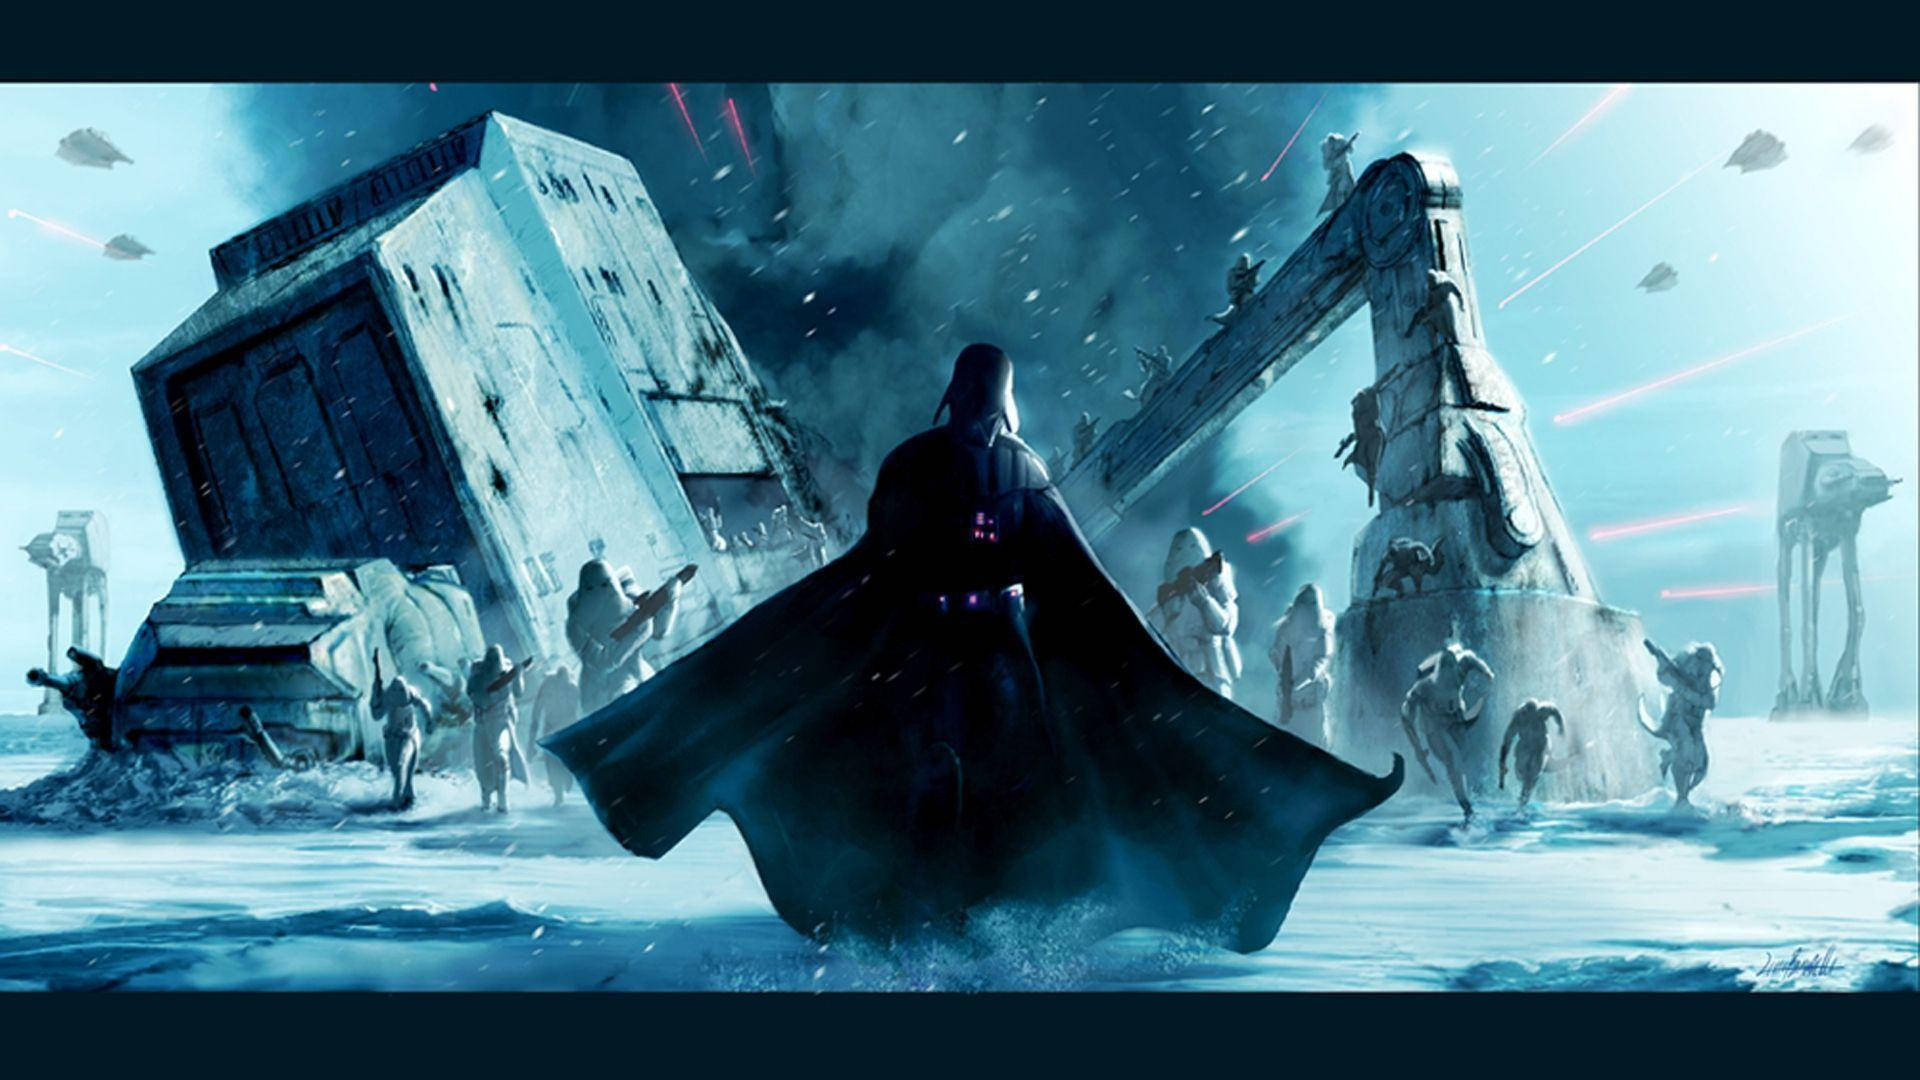 Darth Vader In Star Wars Background